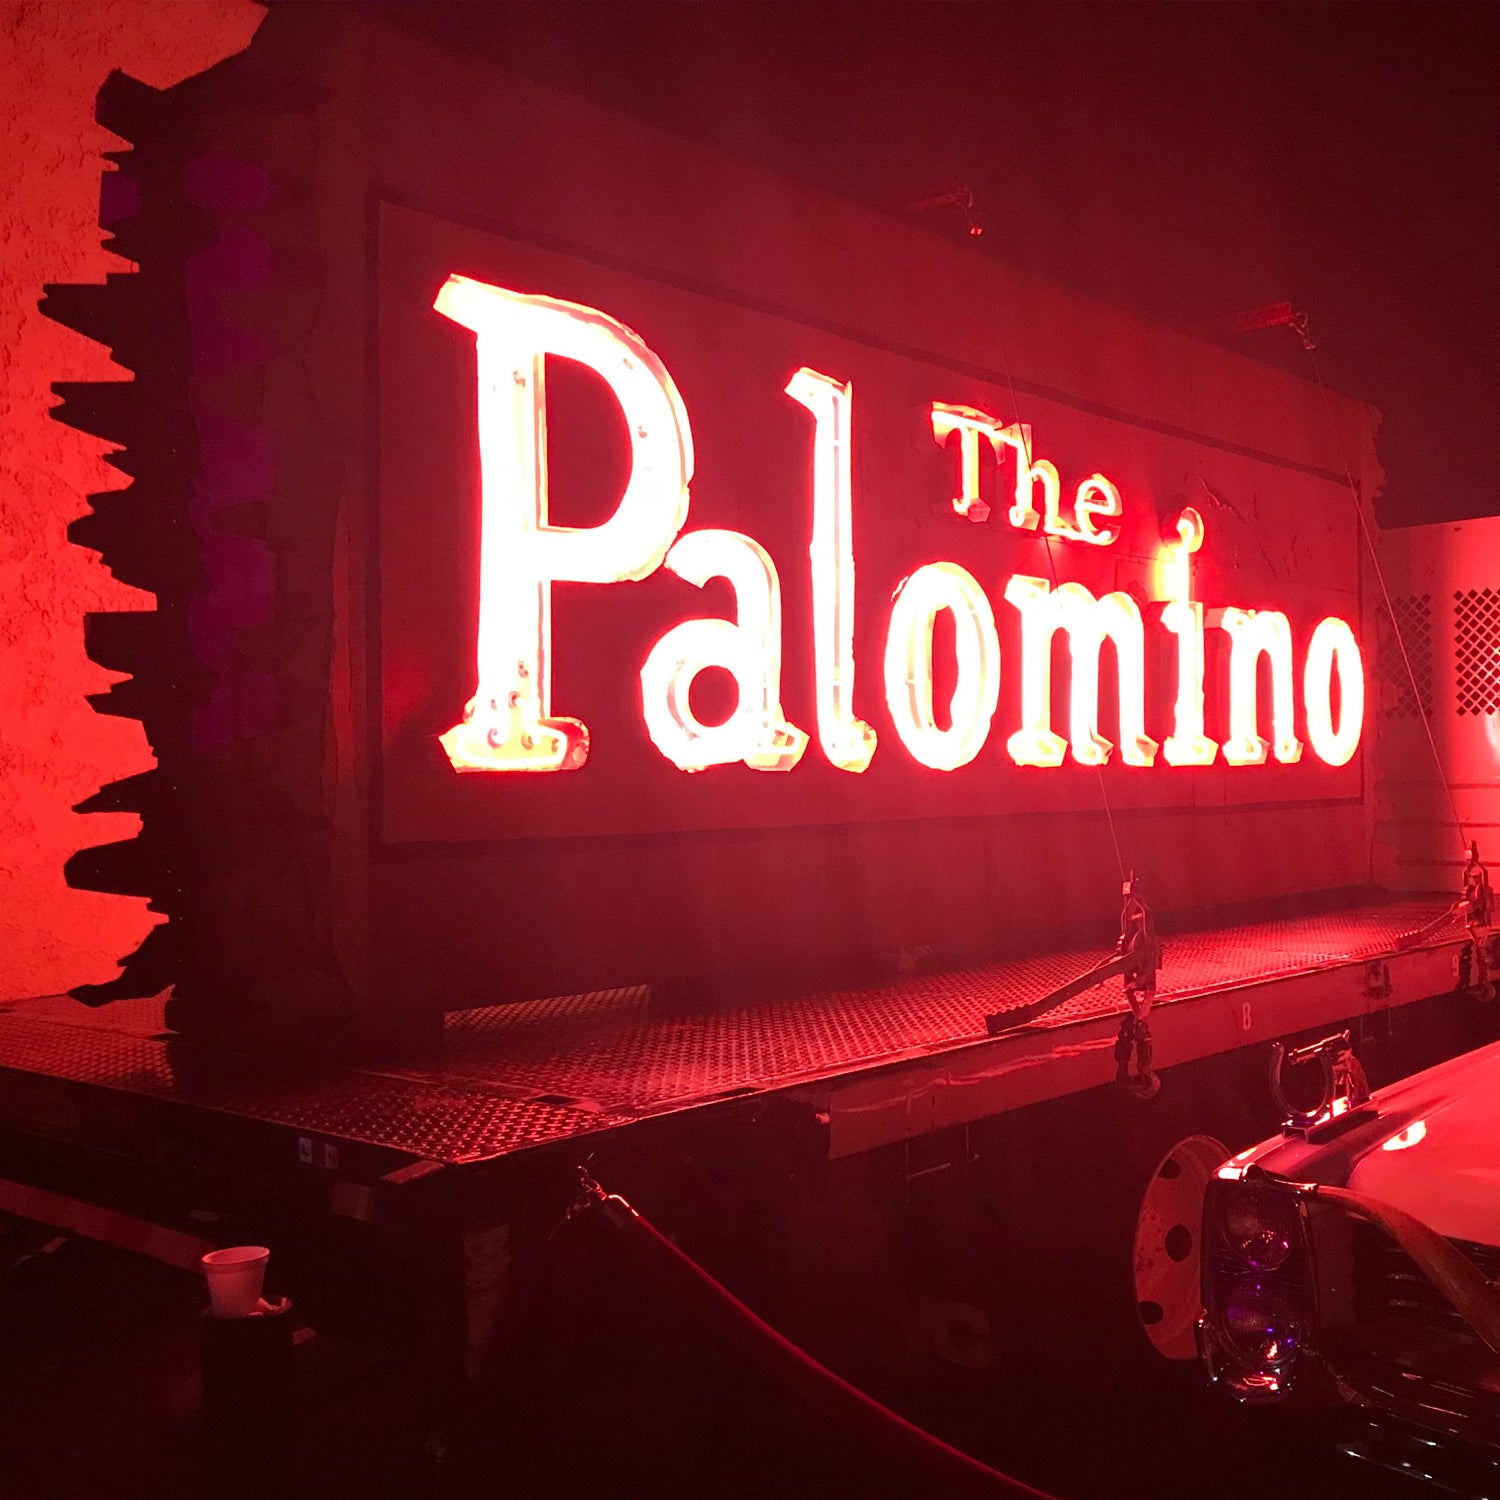 The Palomino T-Shirt